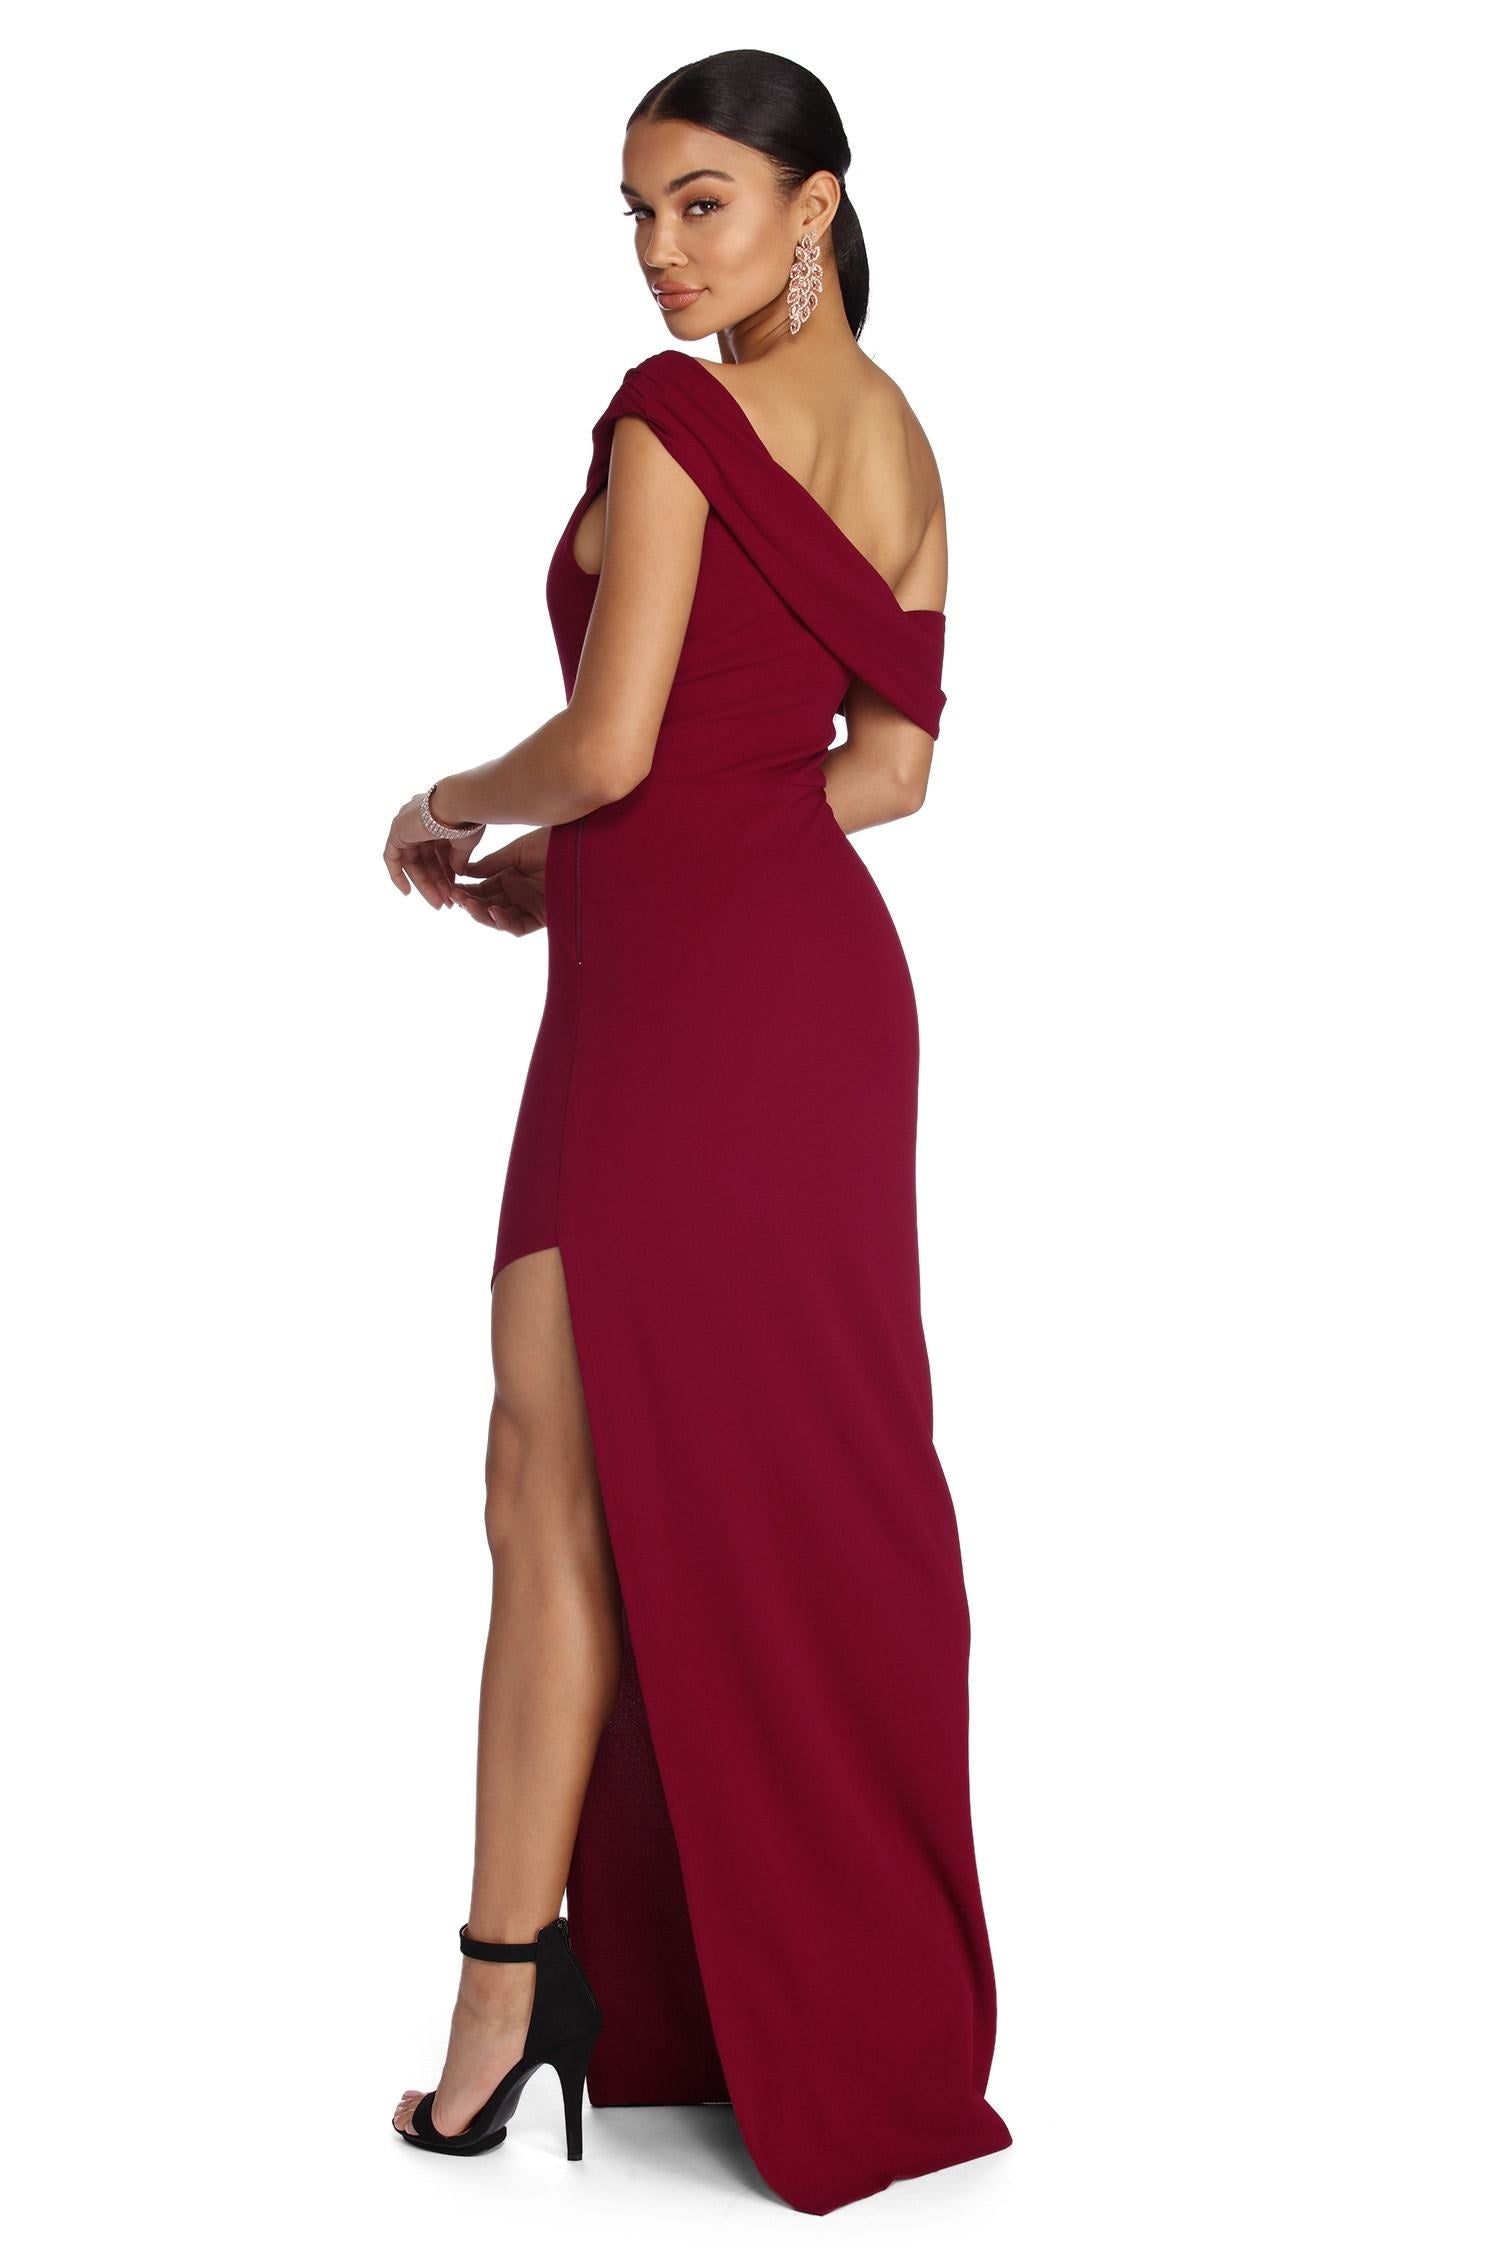 Althea Formal One Shoulder Dresses